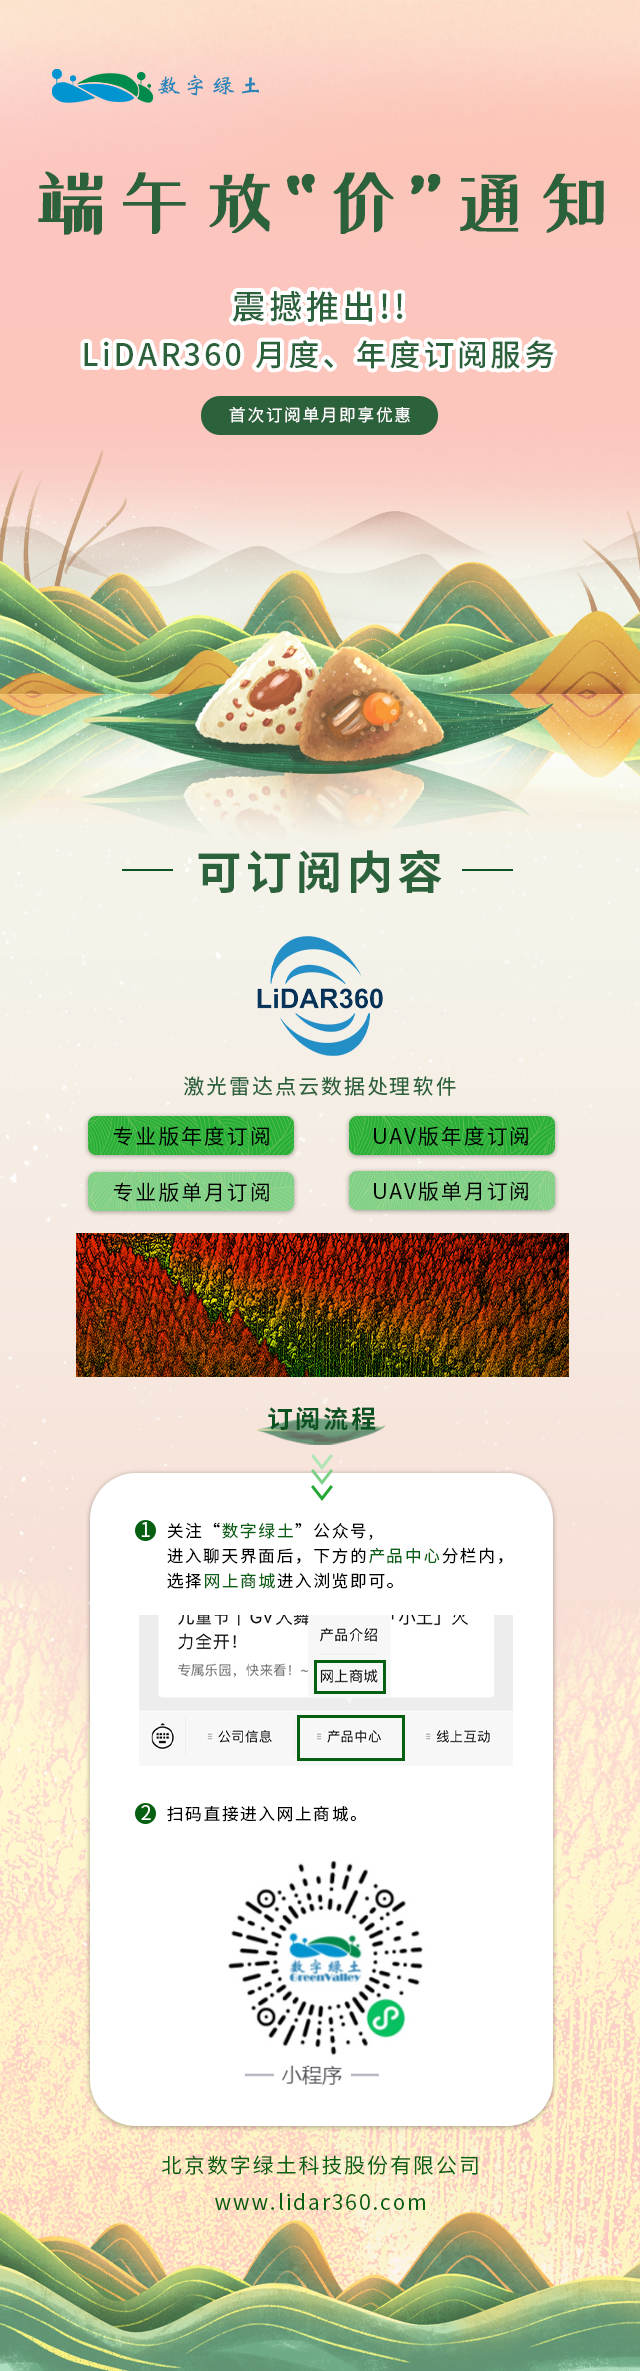 迎端午 | 数字绿土LiDAR360放“价”通知